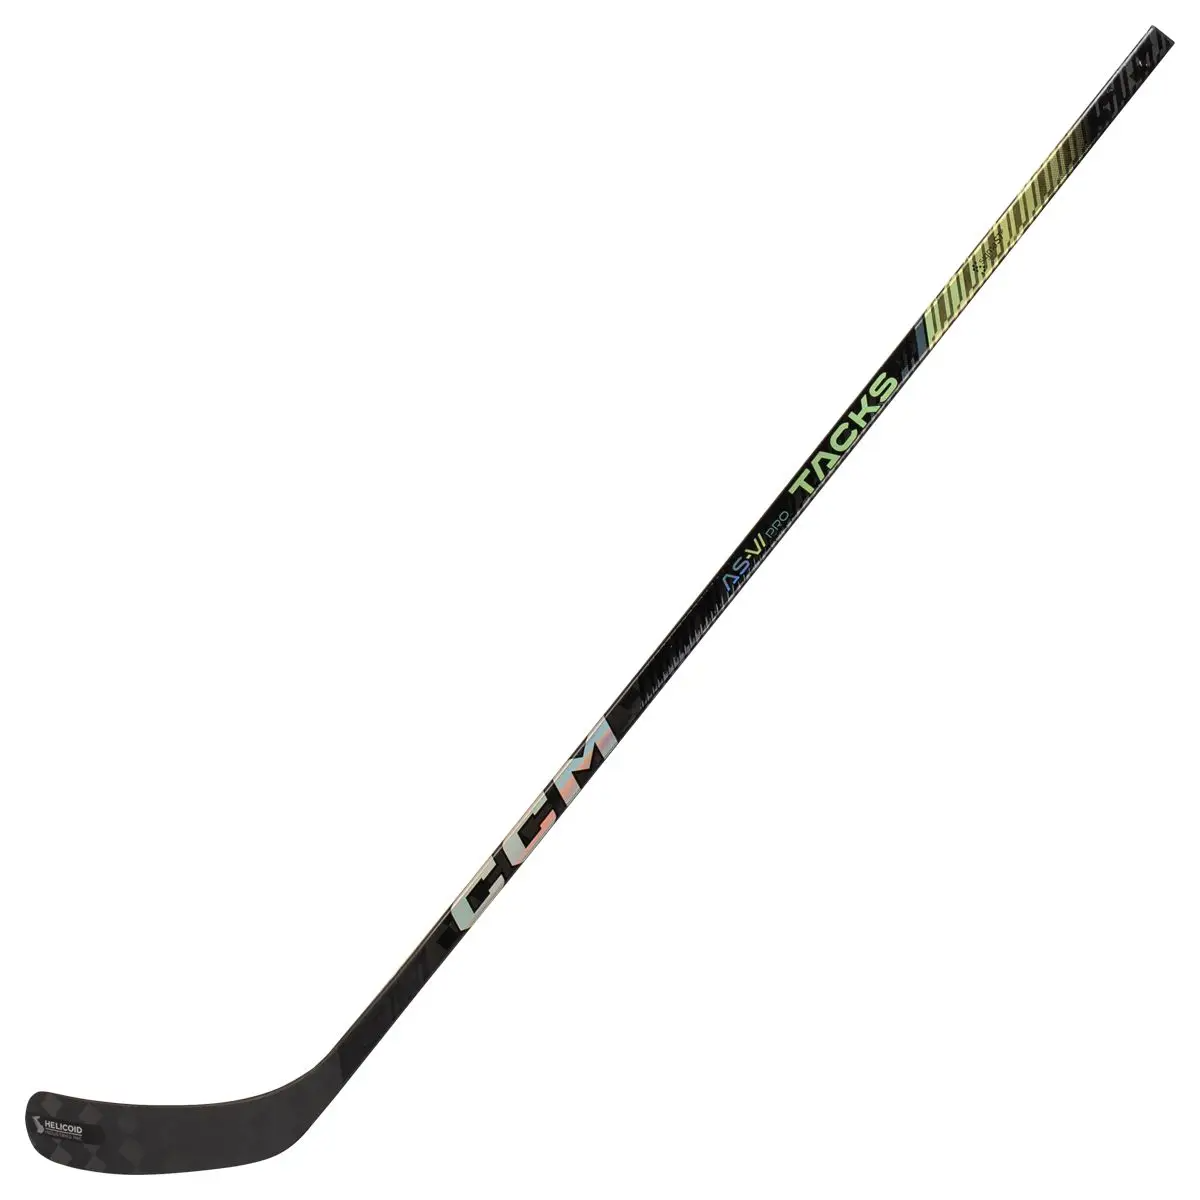 CCM Tacks AS-VI Pro Junior Composite Hockey Stick